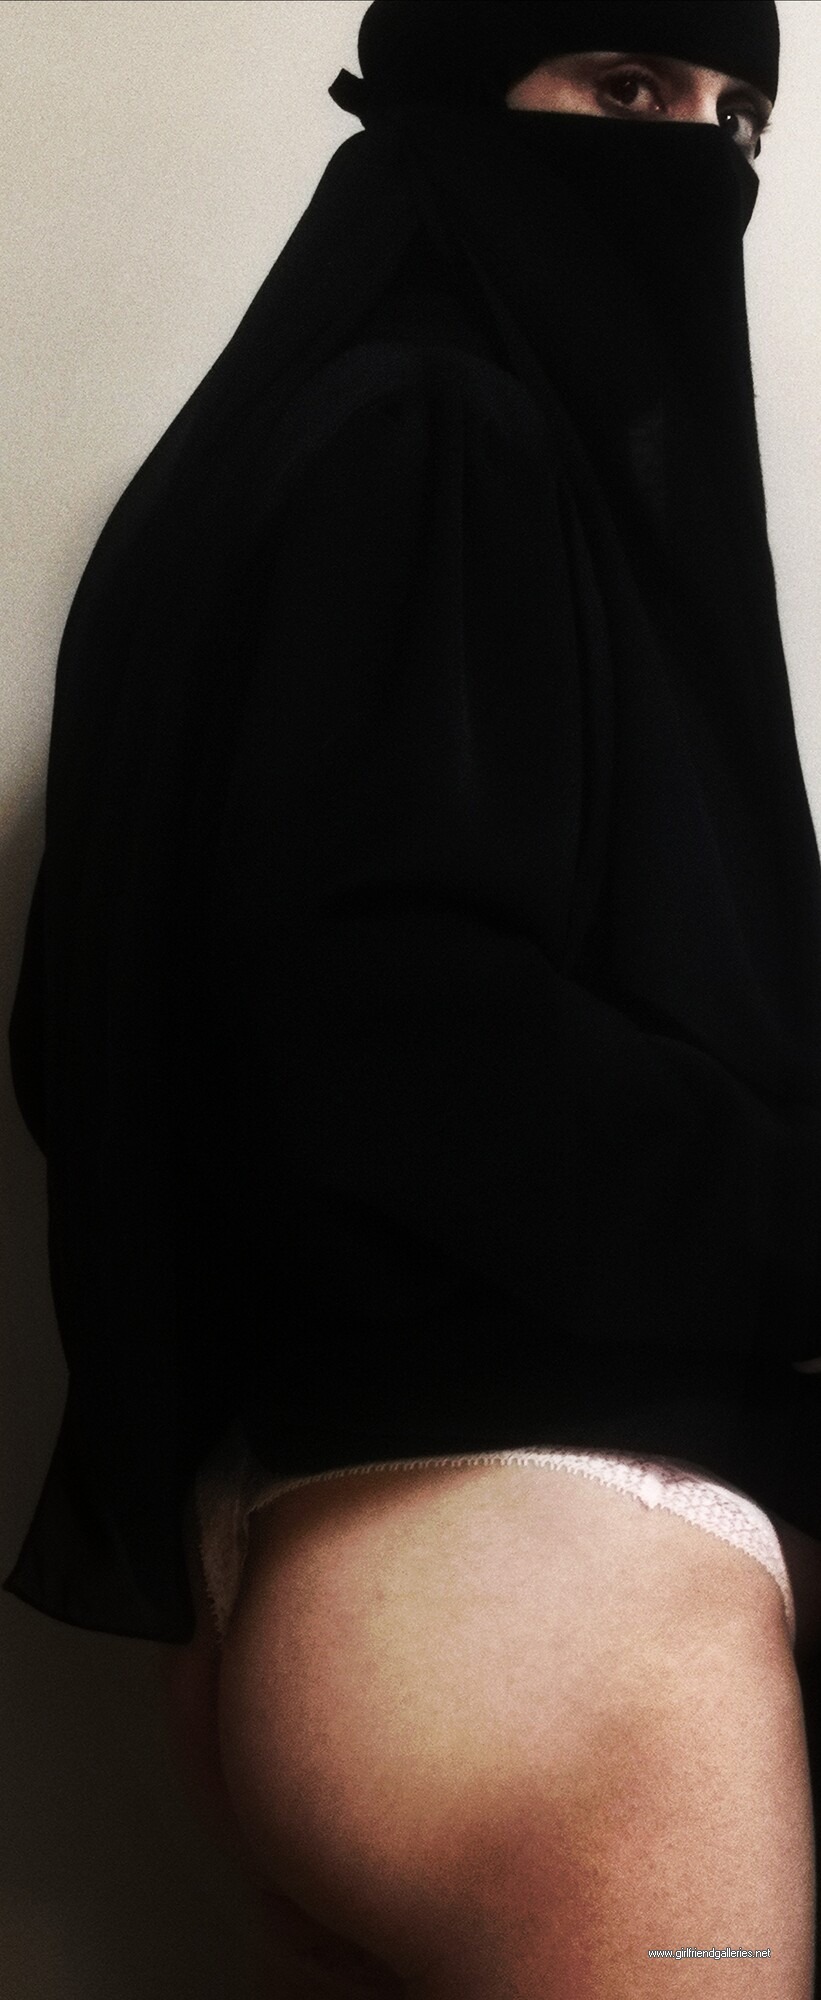 My niqab ass طيزي قحبه منقبه